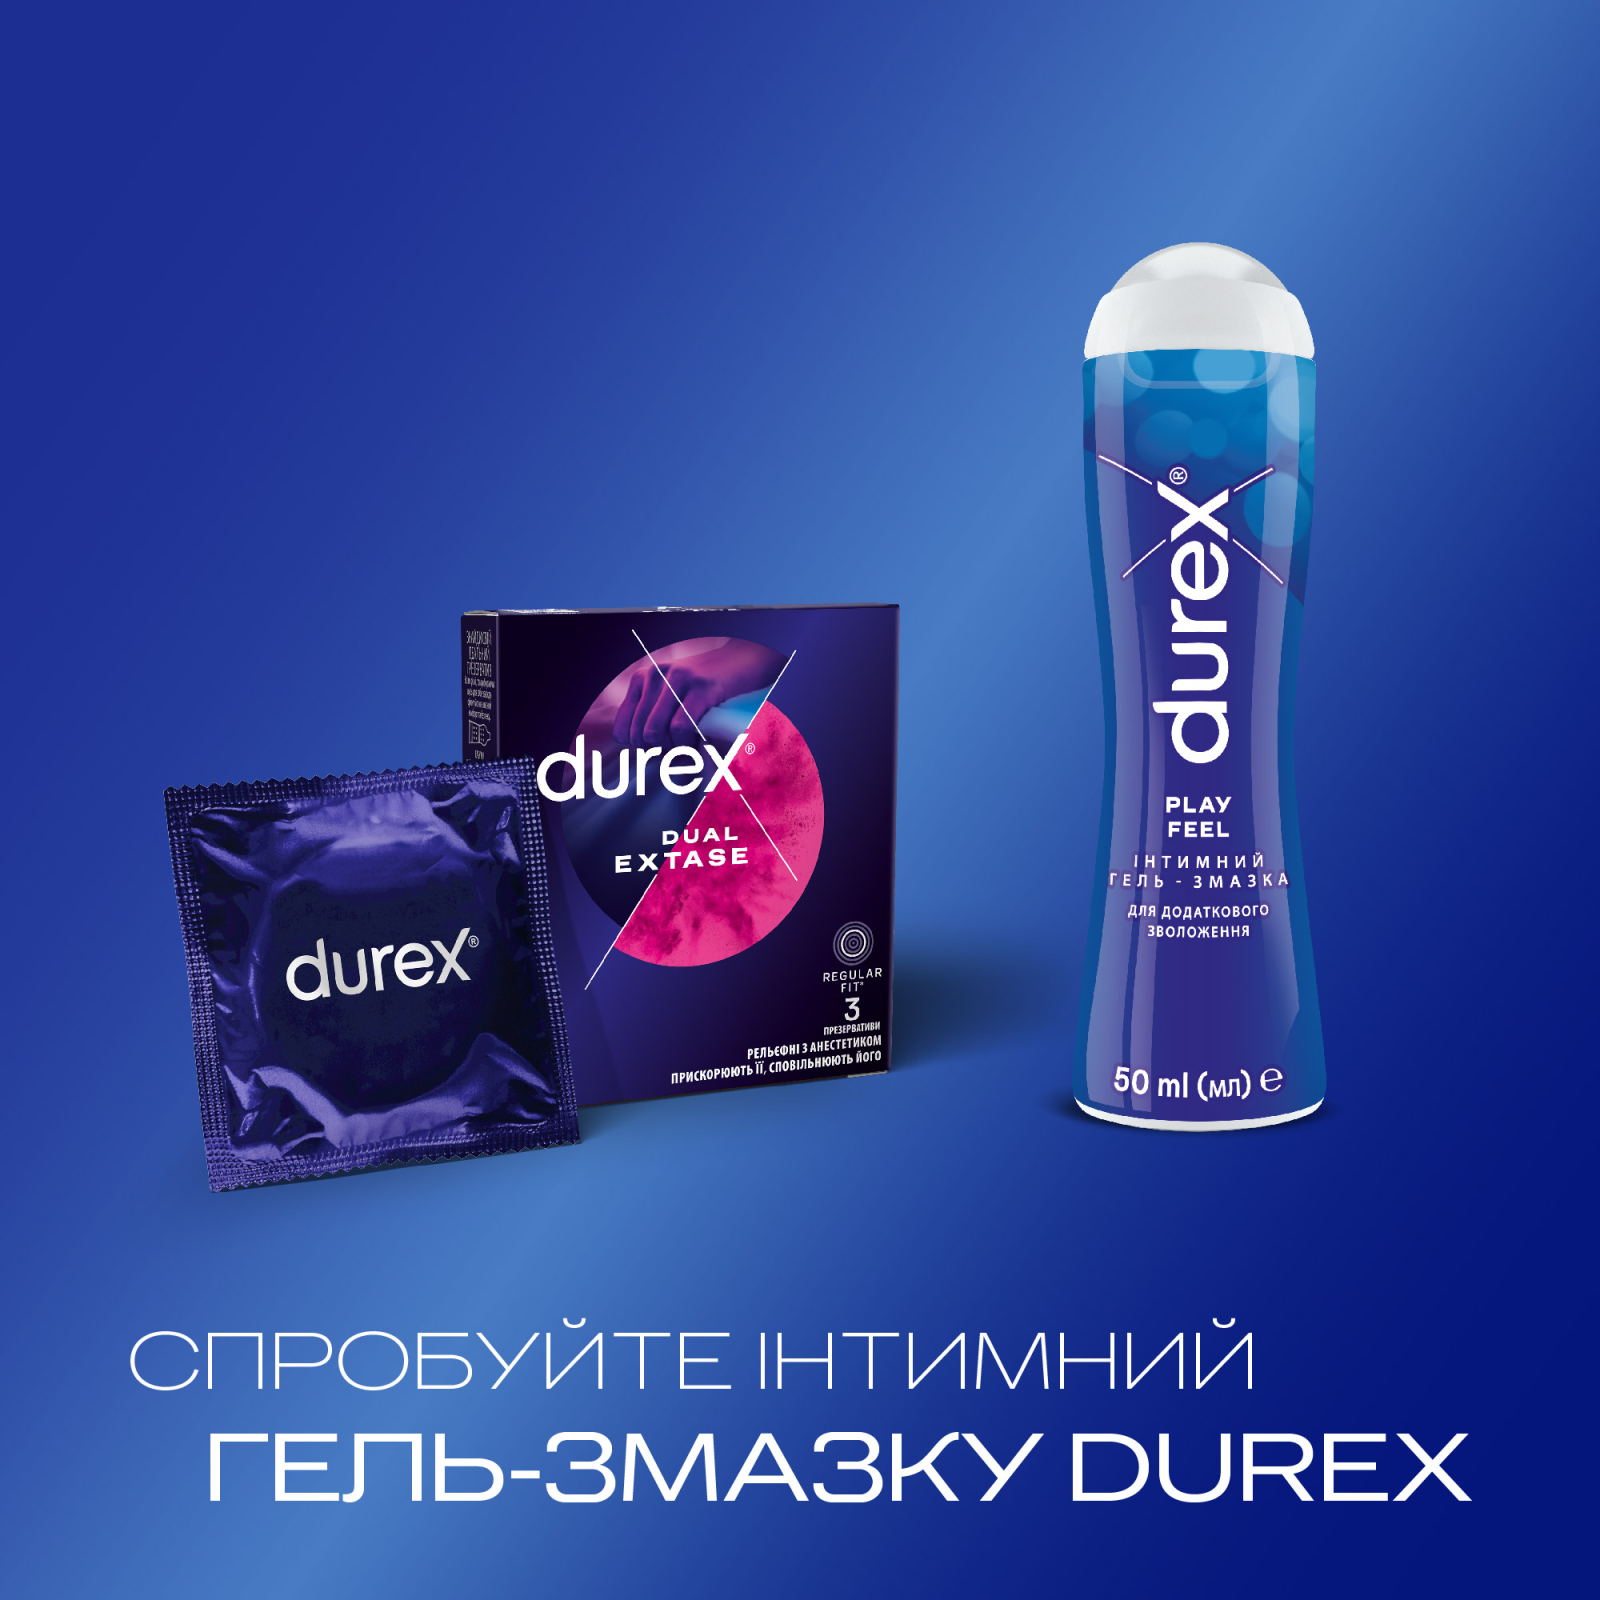 Презервативы Durex Dual Extase рельефные с анестетиком 12 шт. (5052197053432) изображение 5